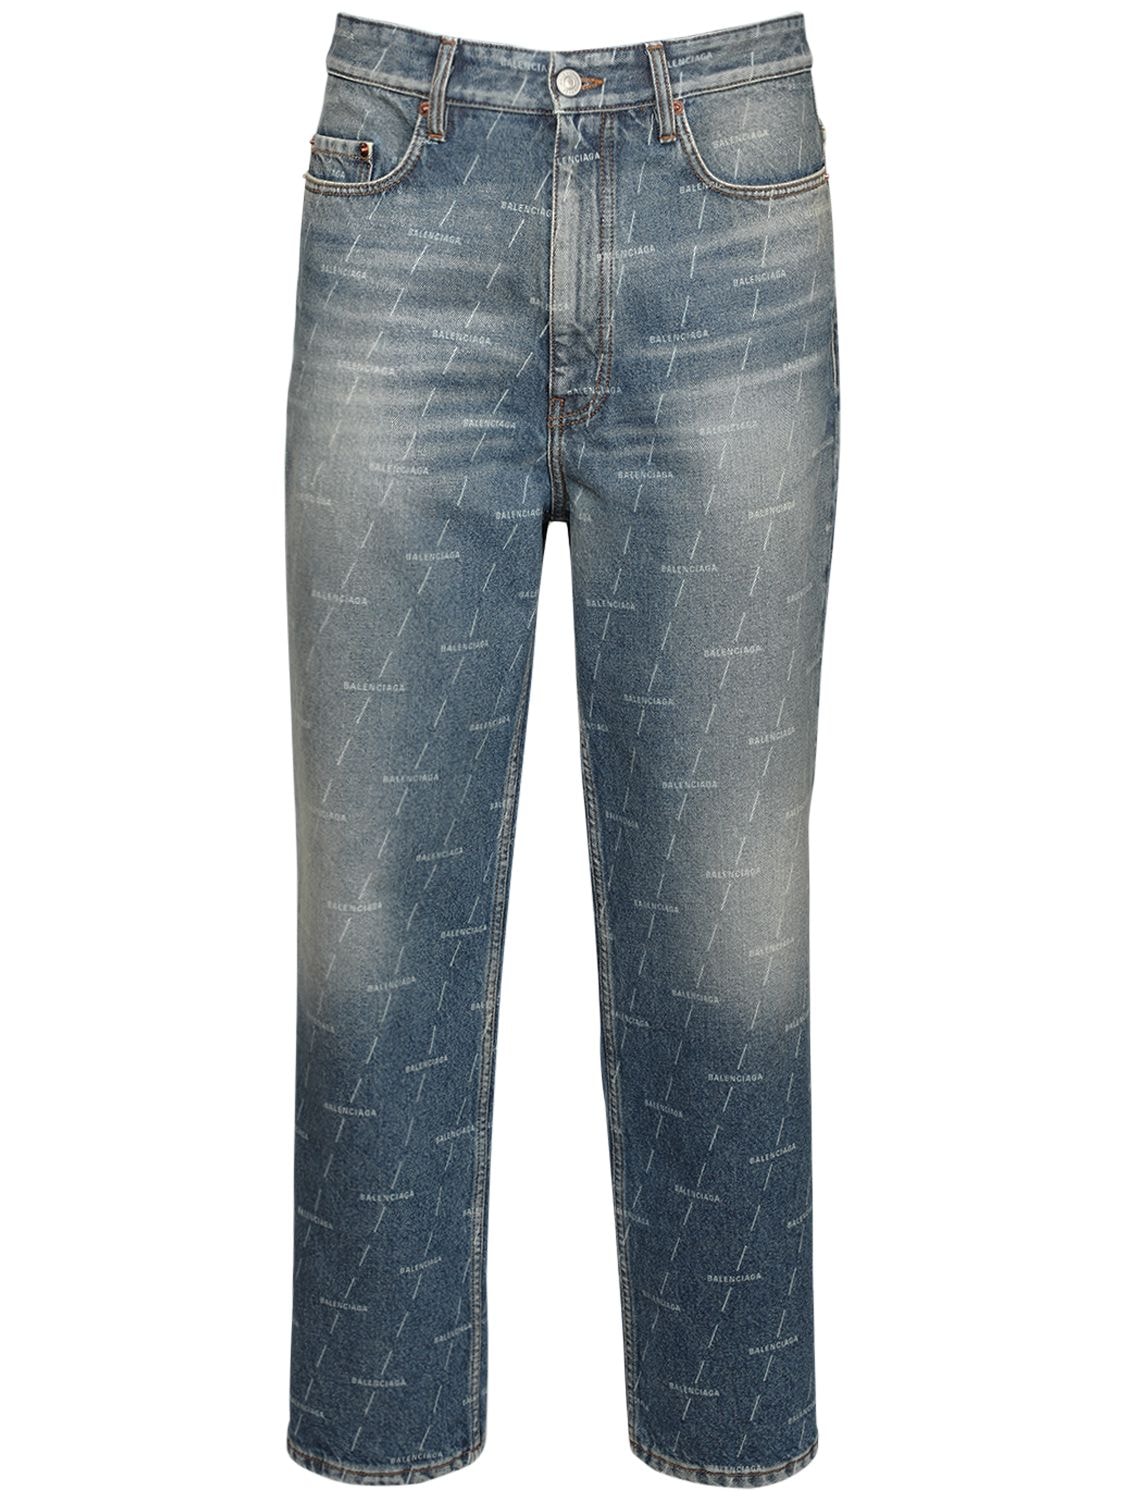 balenciaga logo print jeans